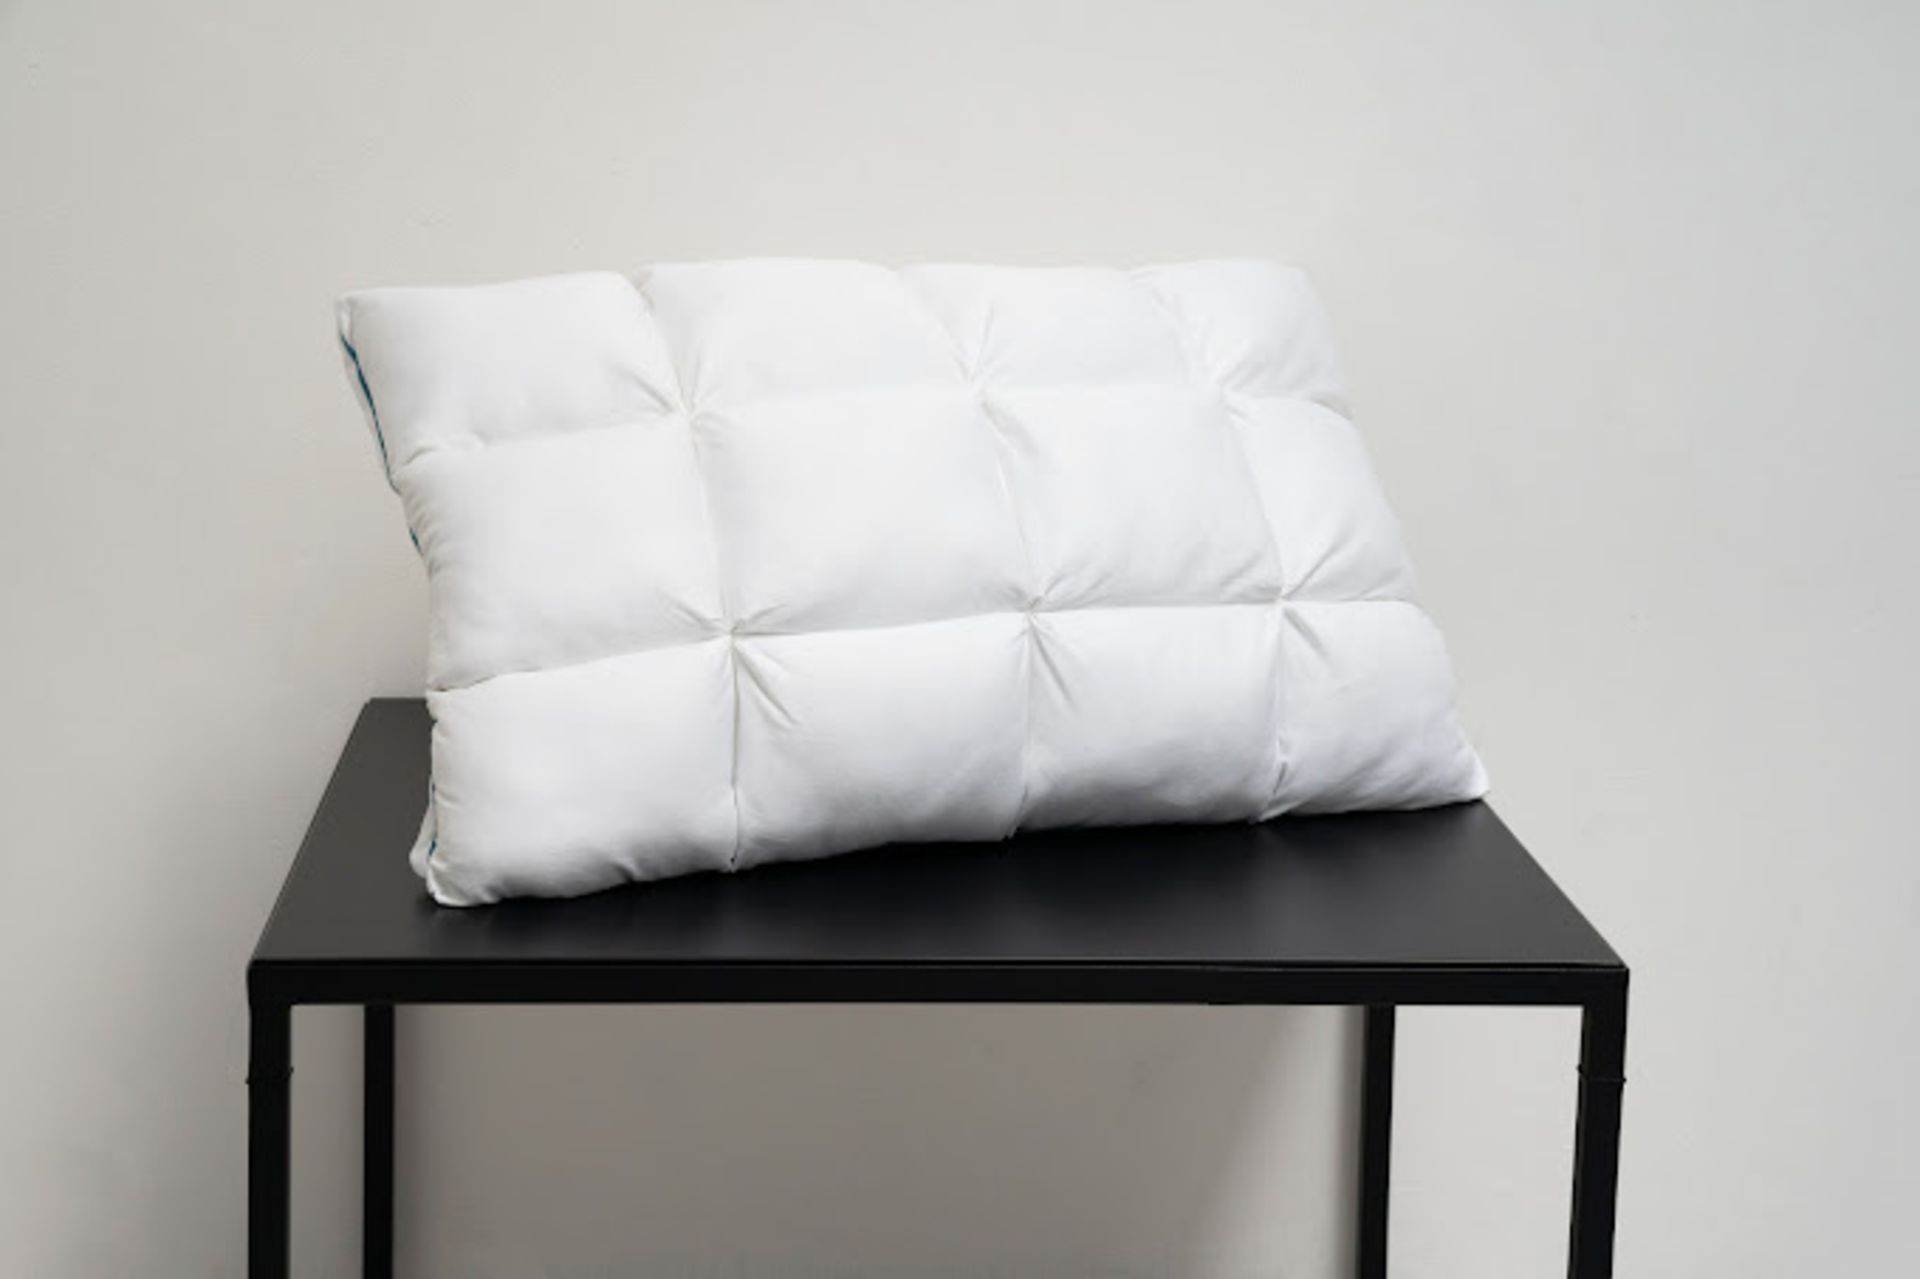 2 x ComfaSleep PL0001 Pillows - Bild 5 aus 18